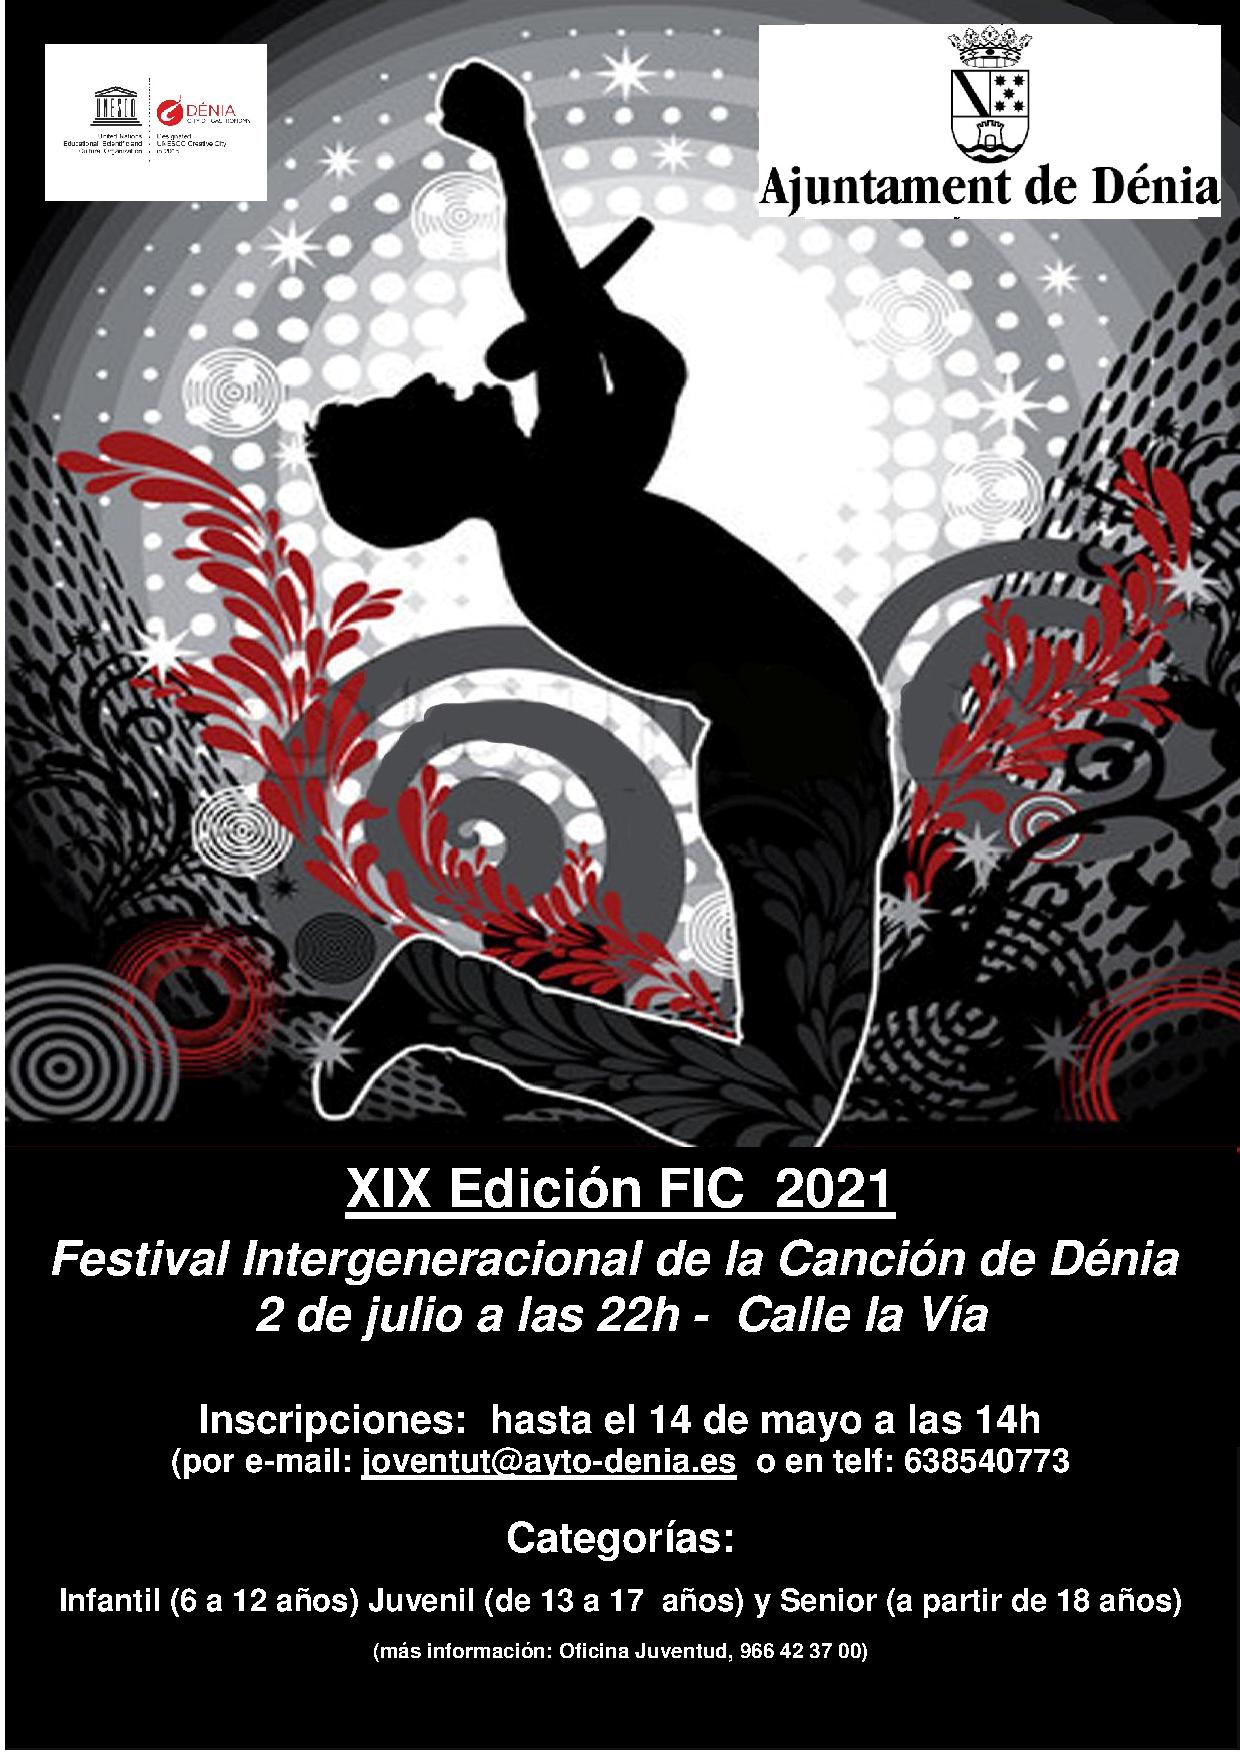  El Ayuntamiento de Dénia prepara una nueva edición del Festival Intergeneracional de la Canción para el 2 de julio 